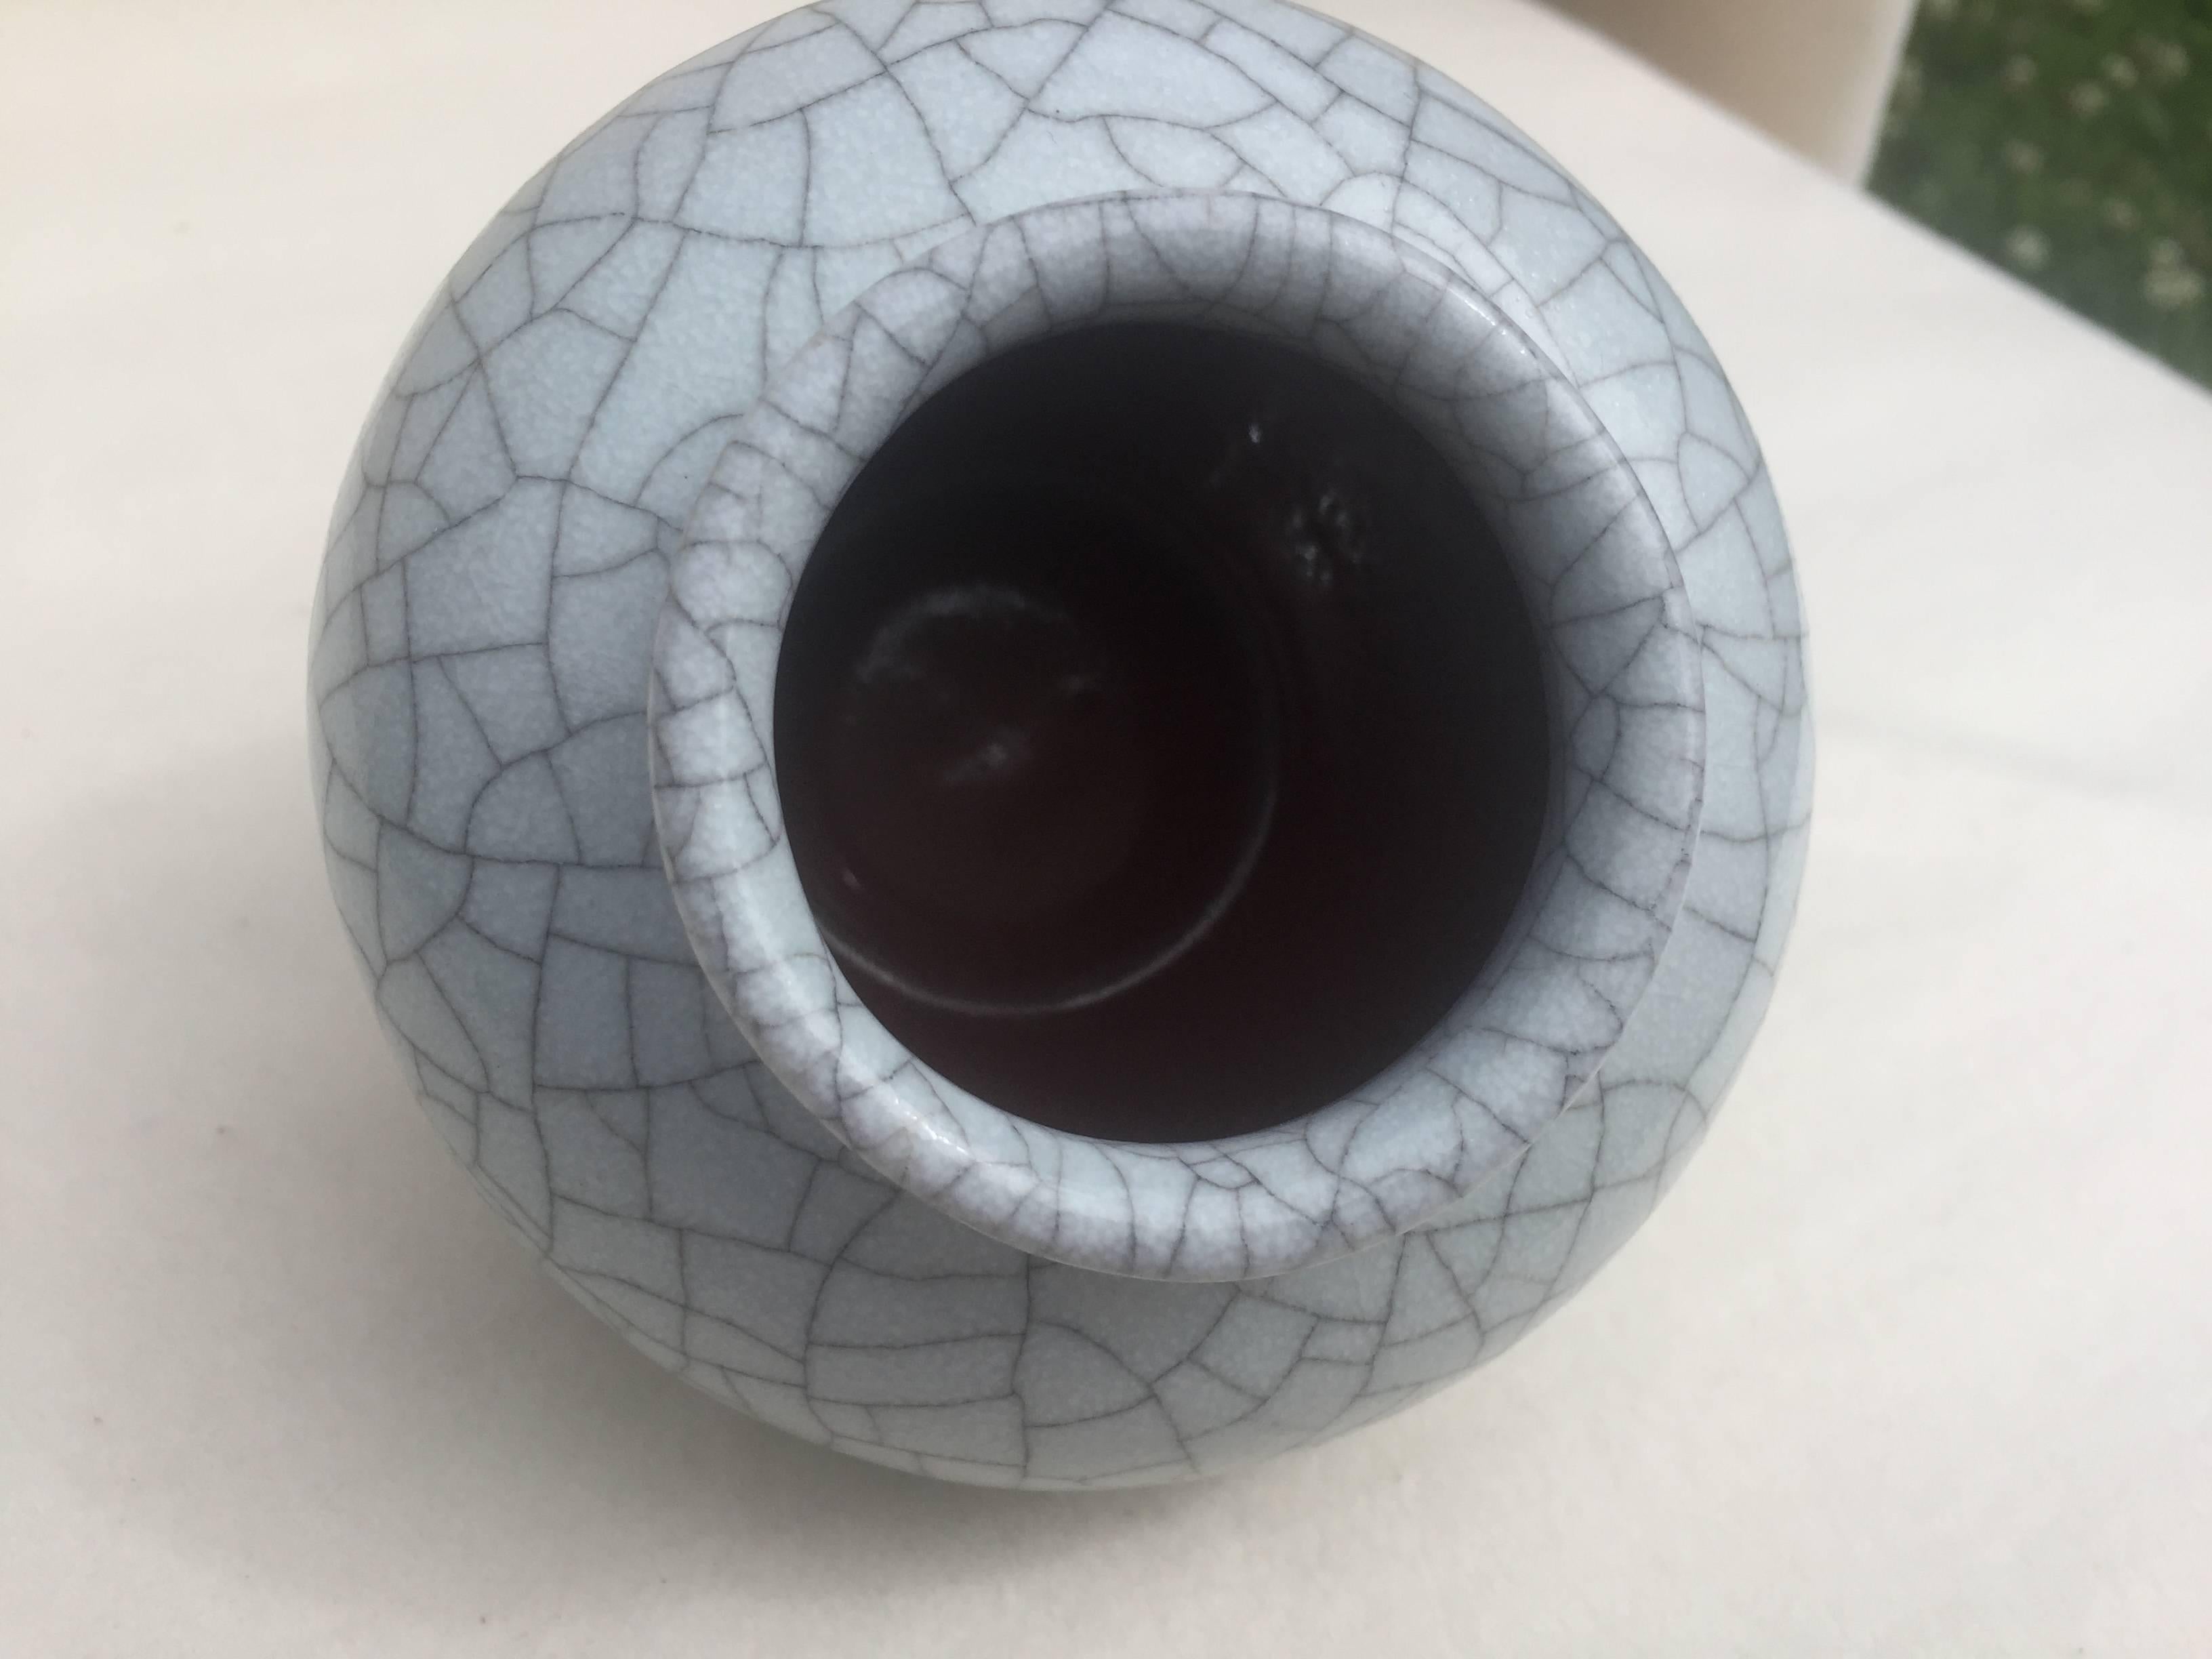 Glazed Spherical Vase by Karlsruhe Majolica Glatzle 1970s in Grey Crackled Glaze For Sale